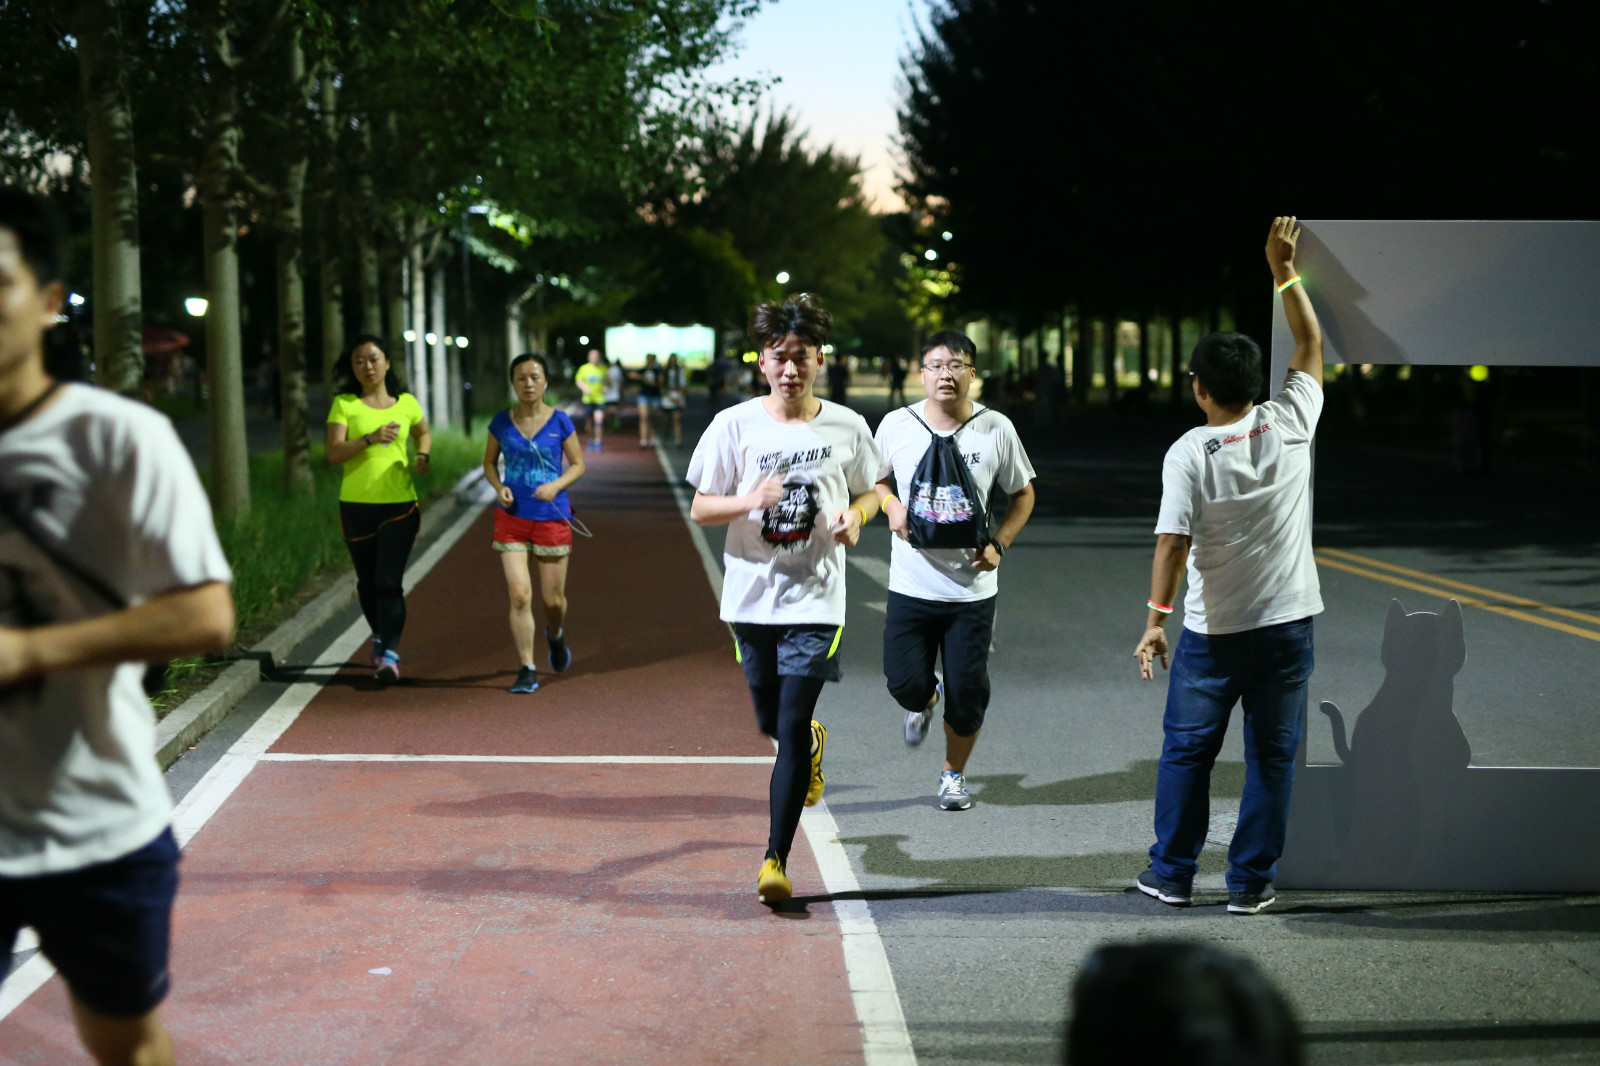 而鹿晗运动季的玩法并不止于社交网站的在线互动，它带来的运动热潮更是燃到了生活中。8月27日“鹿晗运动季”之“Light Run+1”荧光跑活动在北京朝阳公园举办，线上征集的跑者齐聚现场，每人免费获得荧光跑装备，在有趣的氛围中享受了五公里的运动。